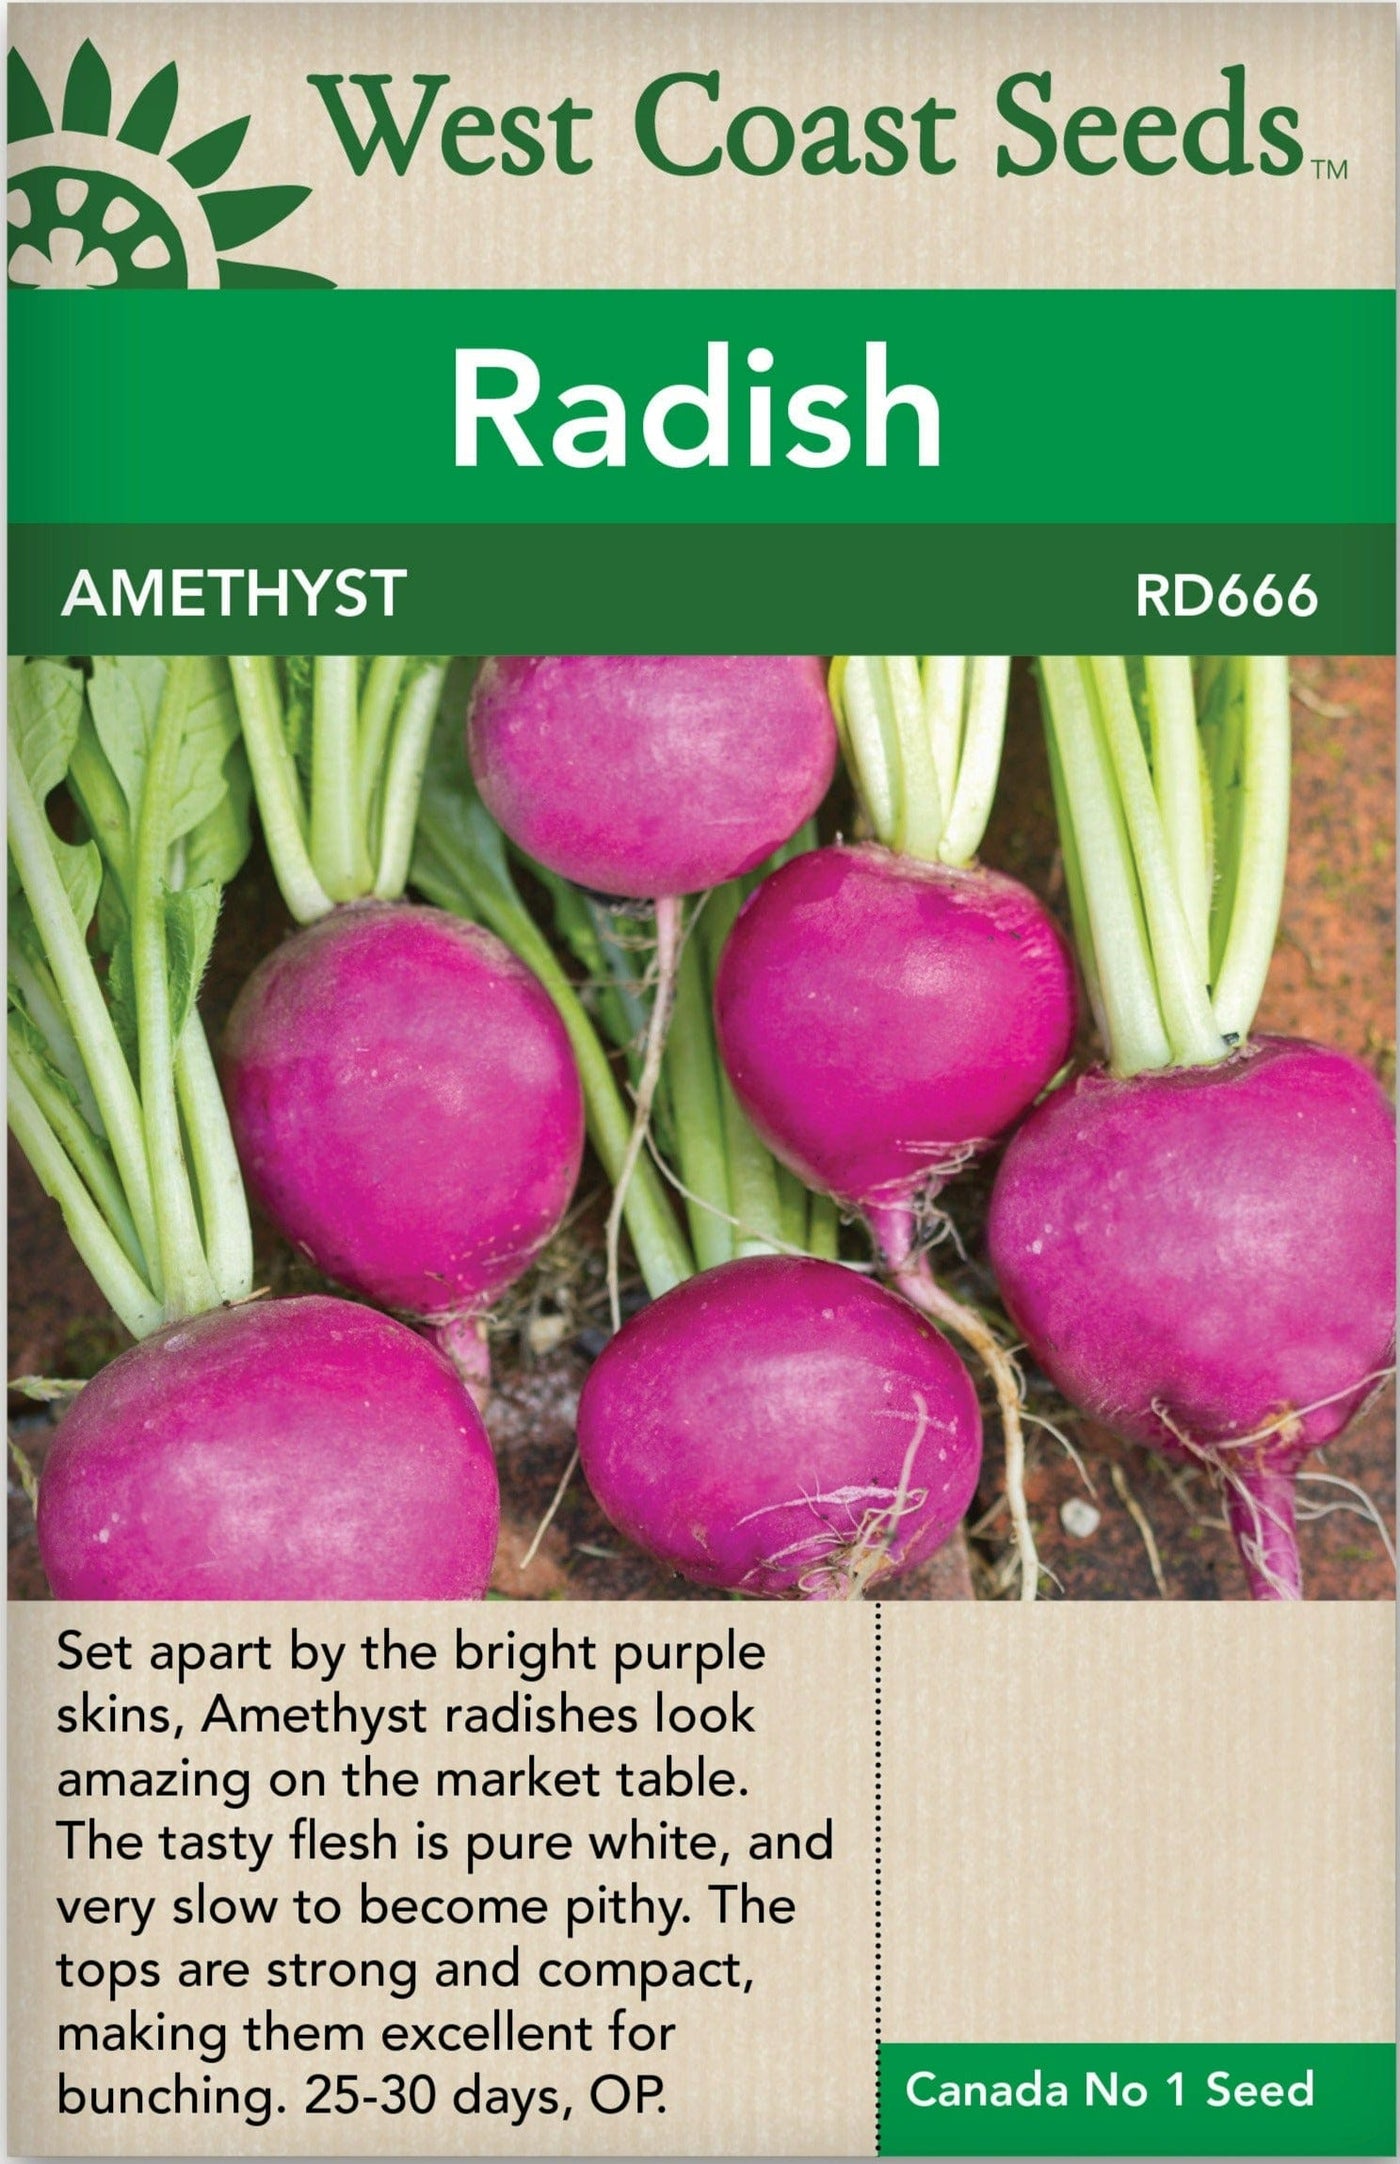 Radish Amethyst - West Coast Seeds